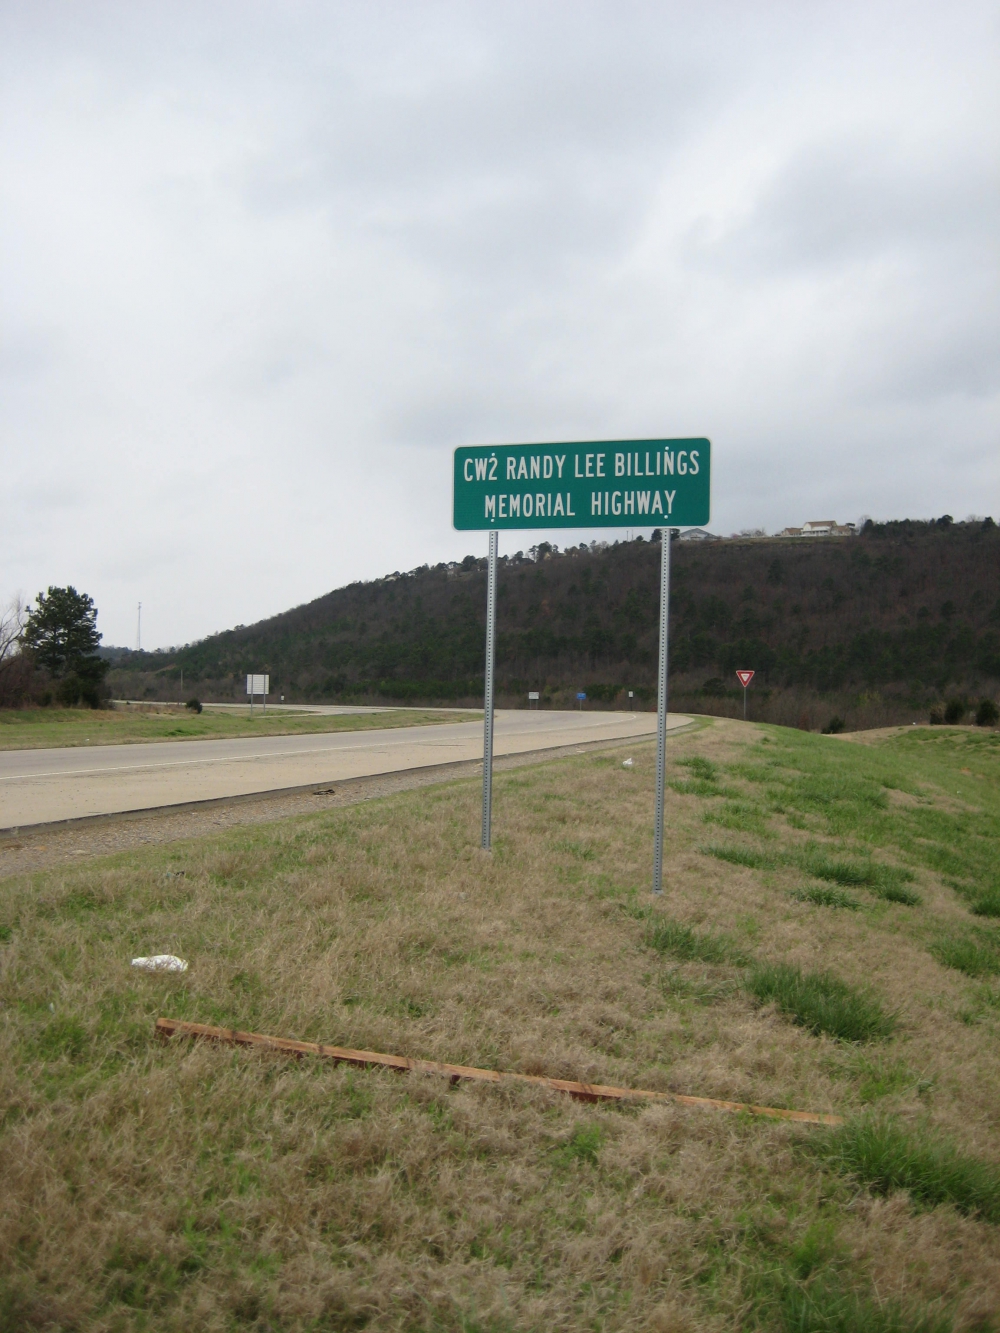 CW2 Randy Lee Billings Memorial Highway